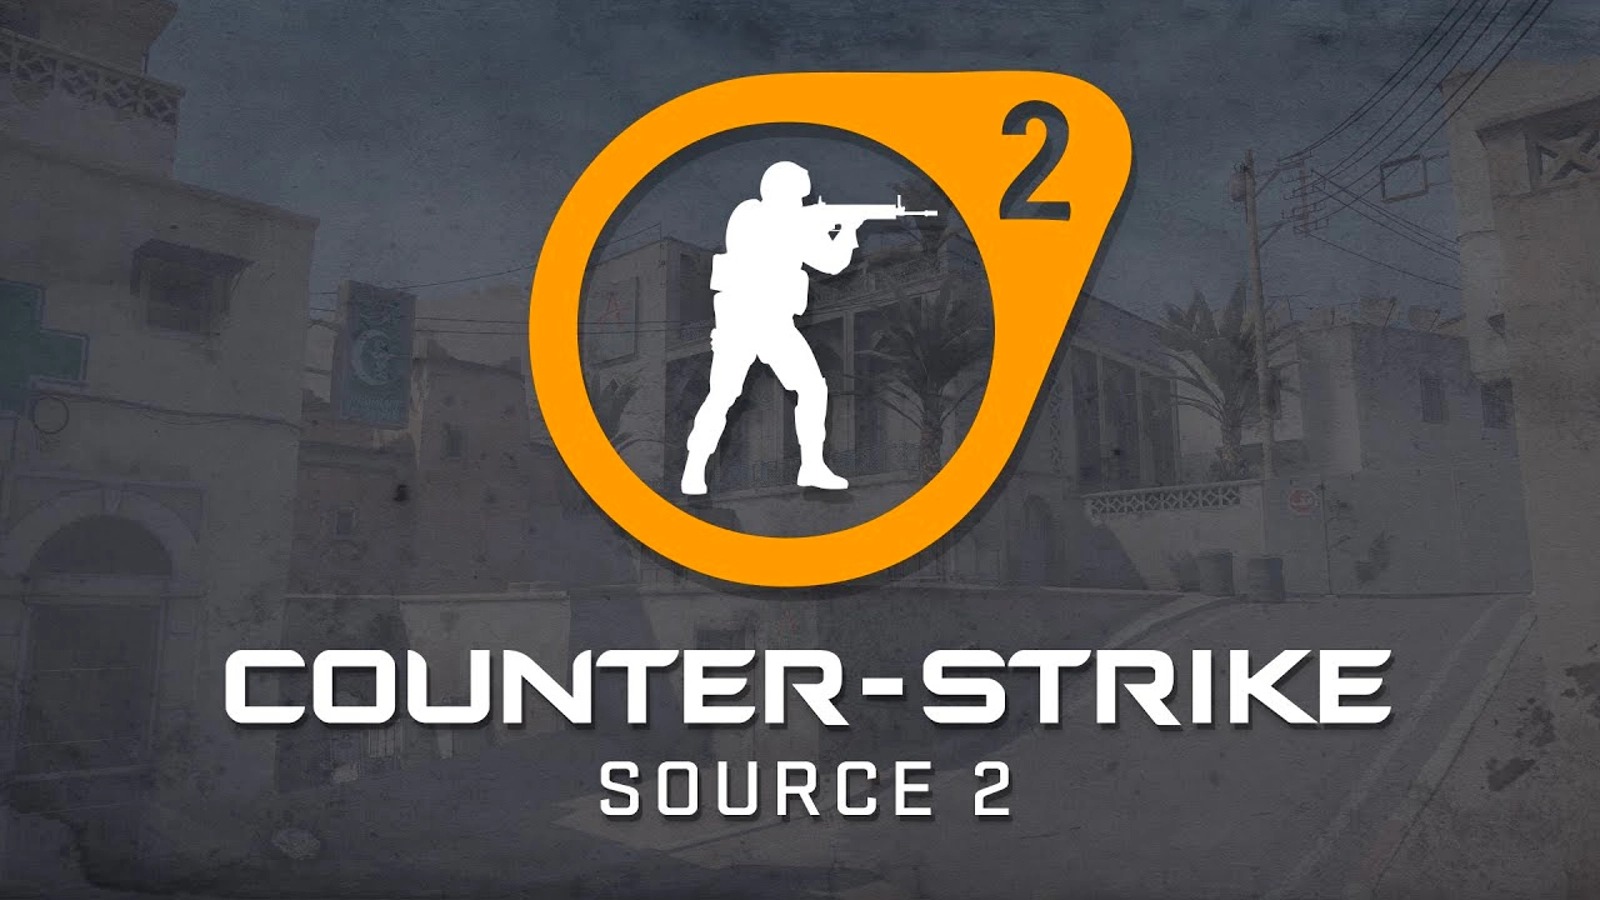 Tin đồn có cơ sở: Counter-Strike 2 sử dụng Source 2 sẽ ra mắt bản beta nội trong tháng Ba, muộn nhất là vào Cá tháng Tư - Ảnh 4.